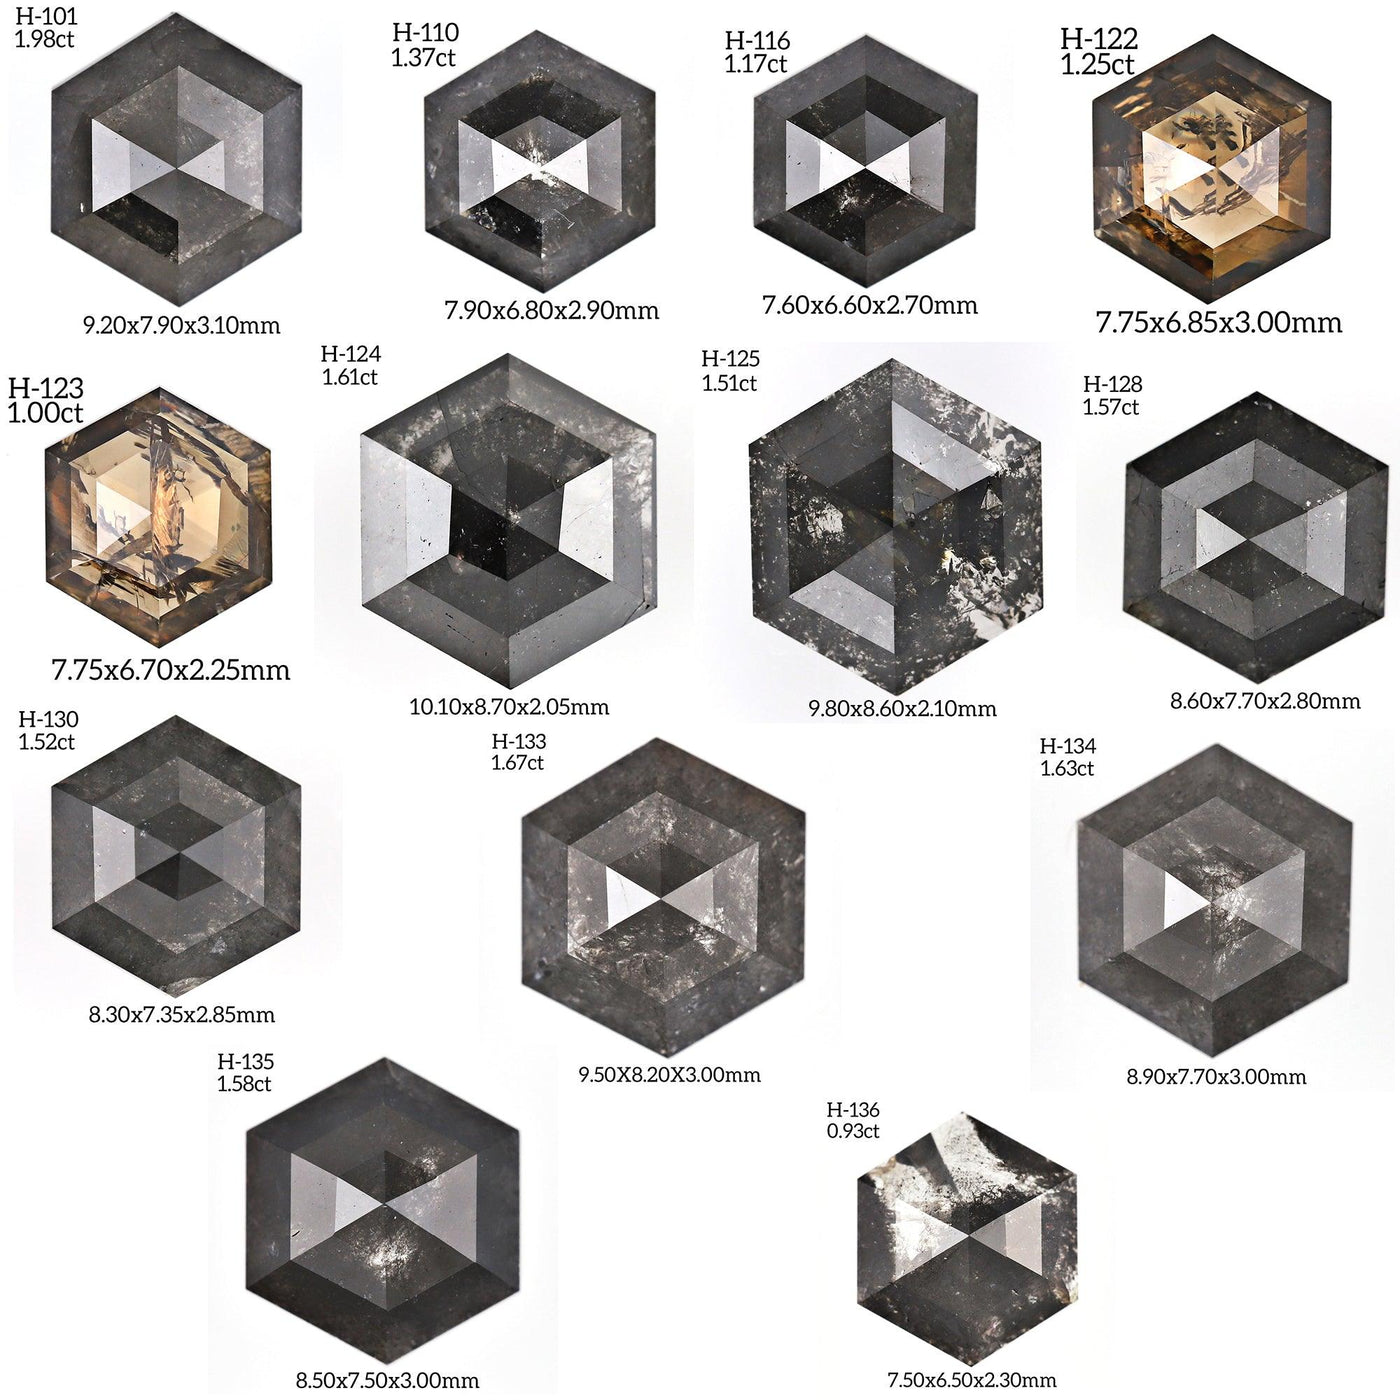 H136 - Salt and pepper hexagon diamond